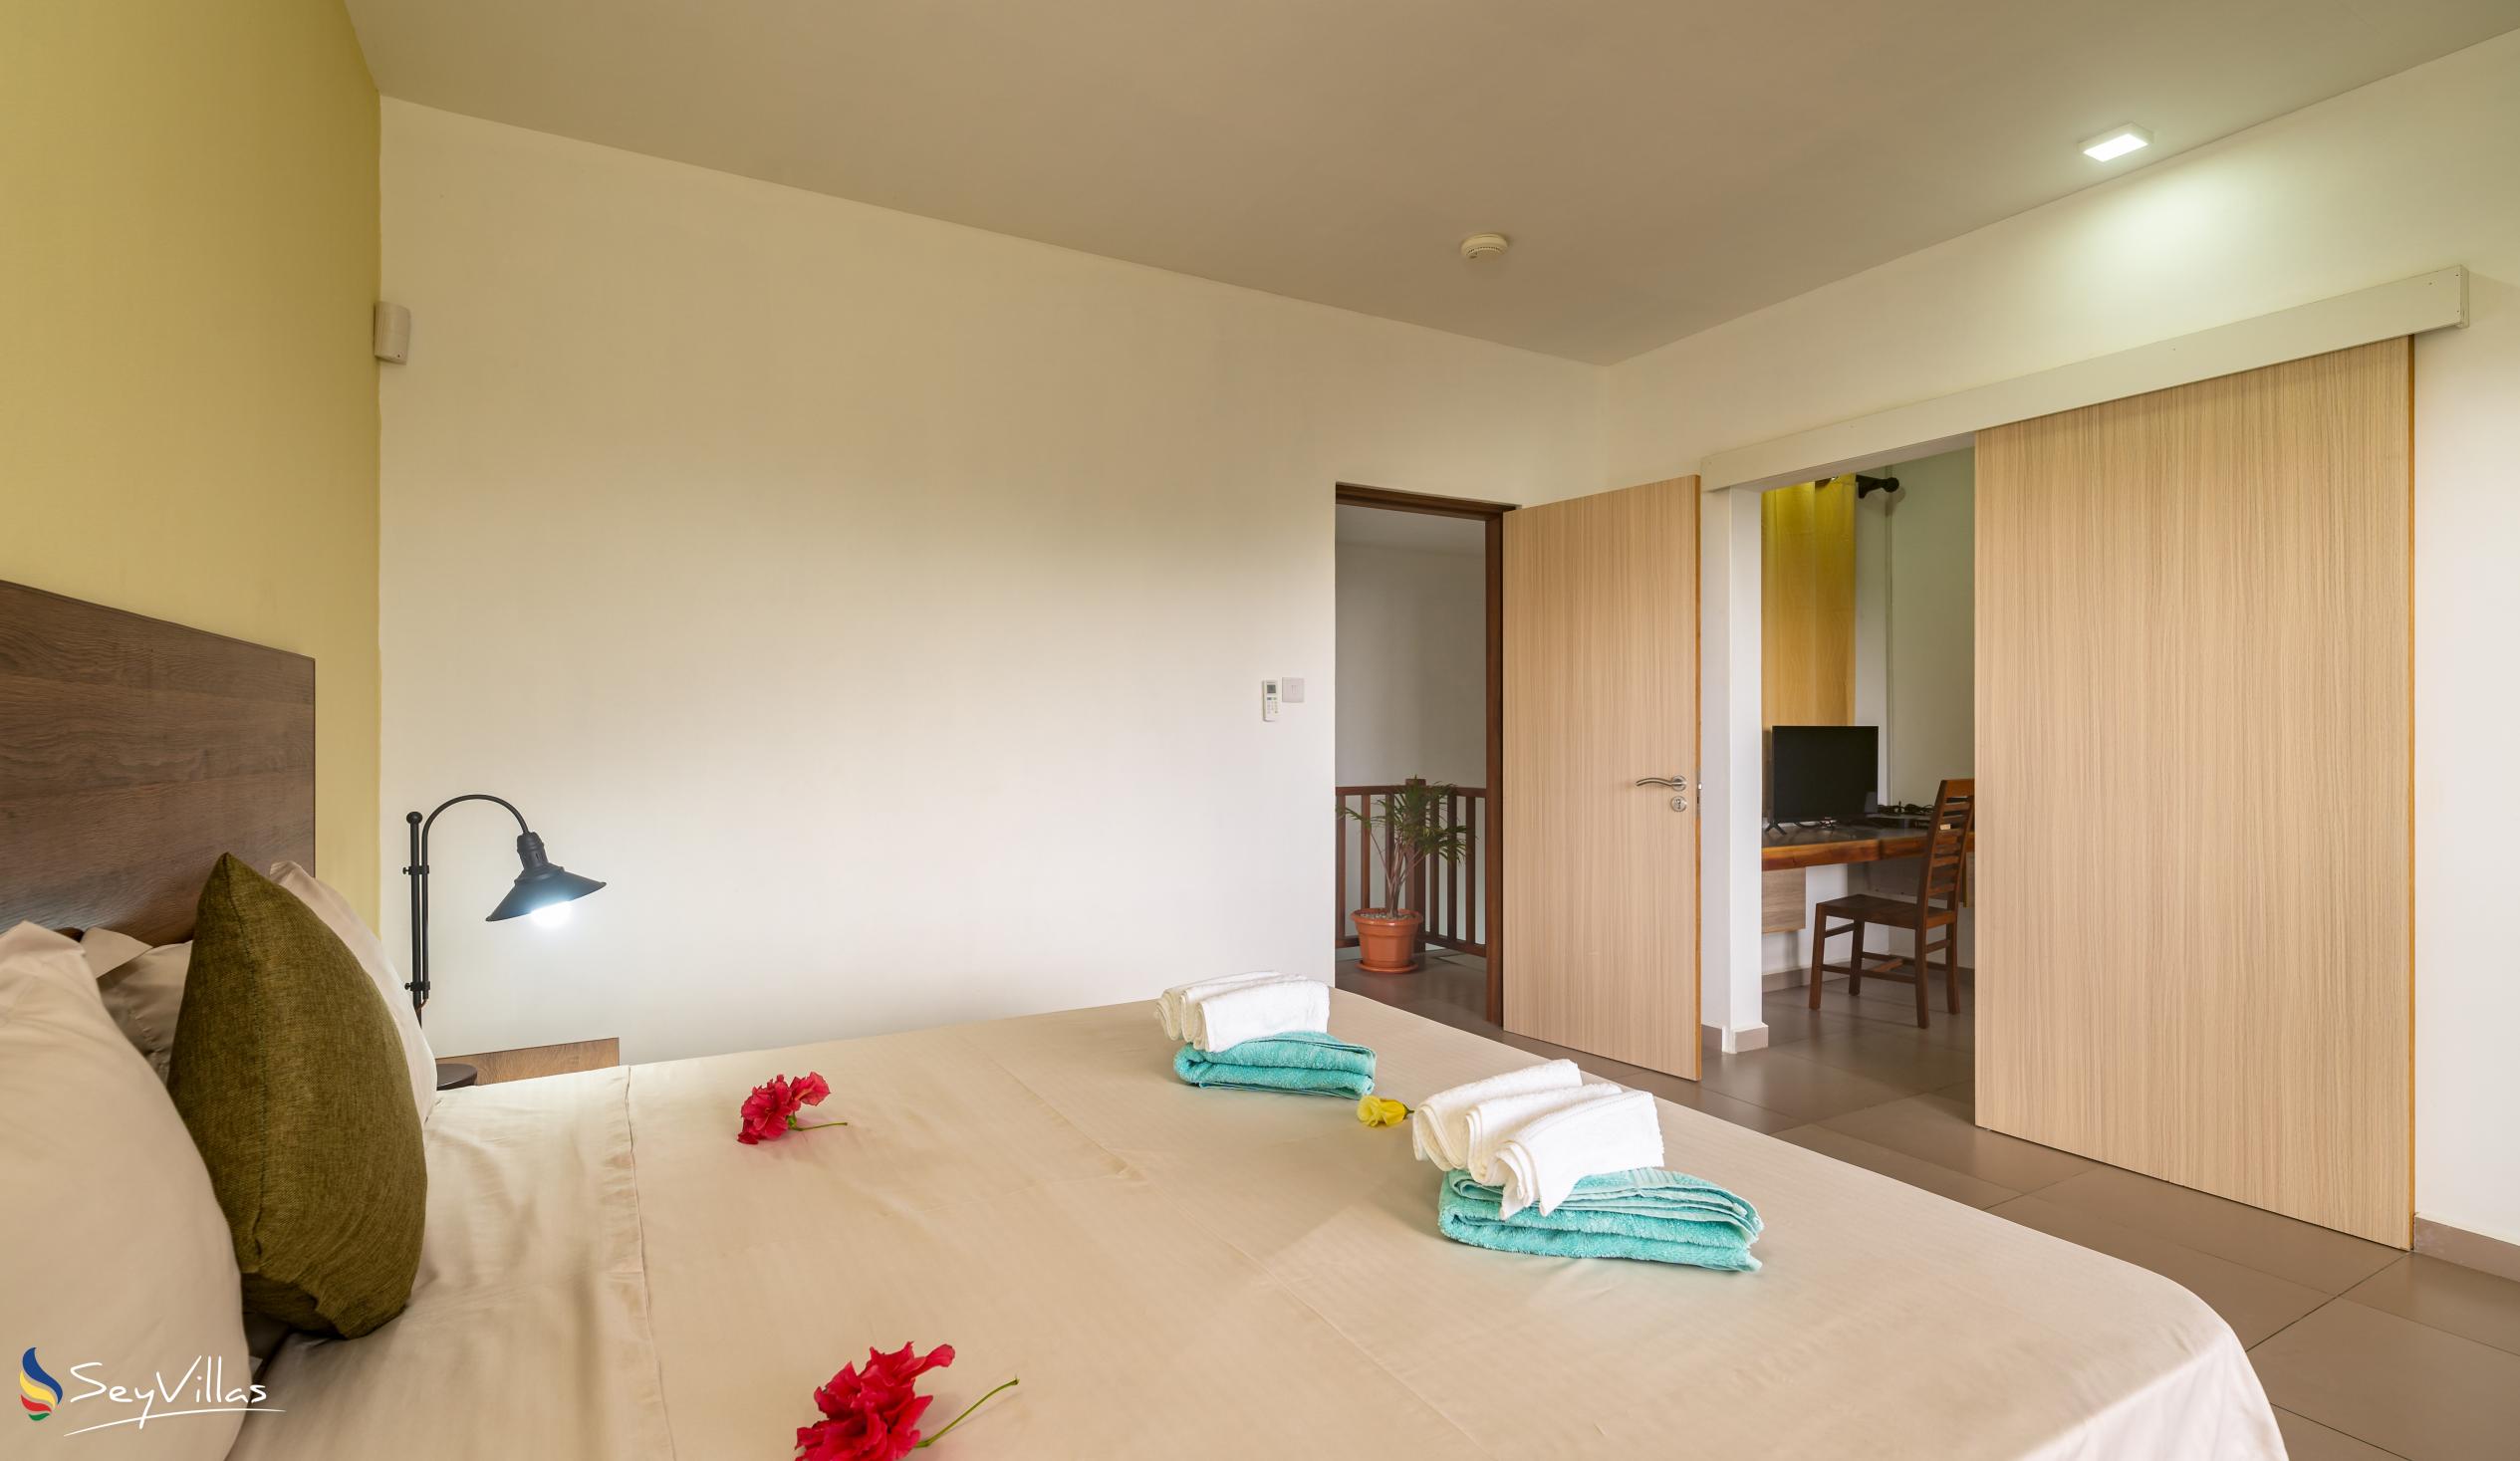 Photo 44: Maison Dora - 2-Bedroom Villa - Mahé (Seychelles)